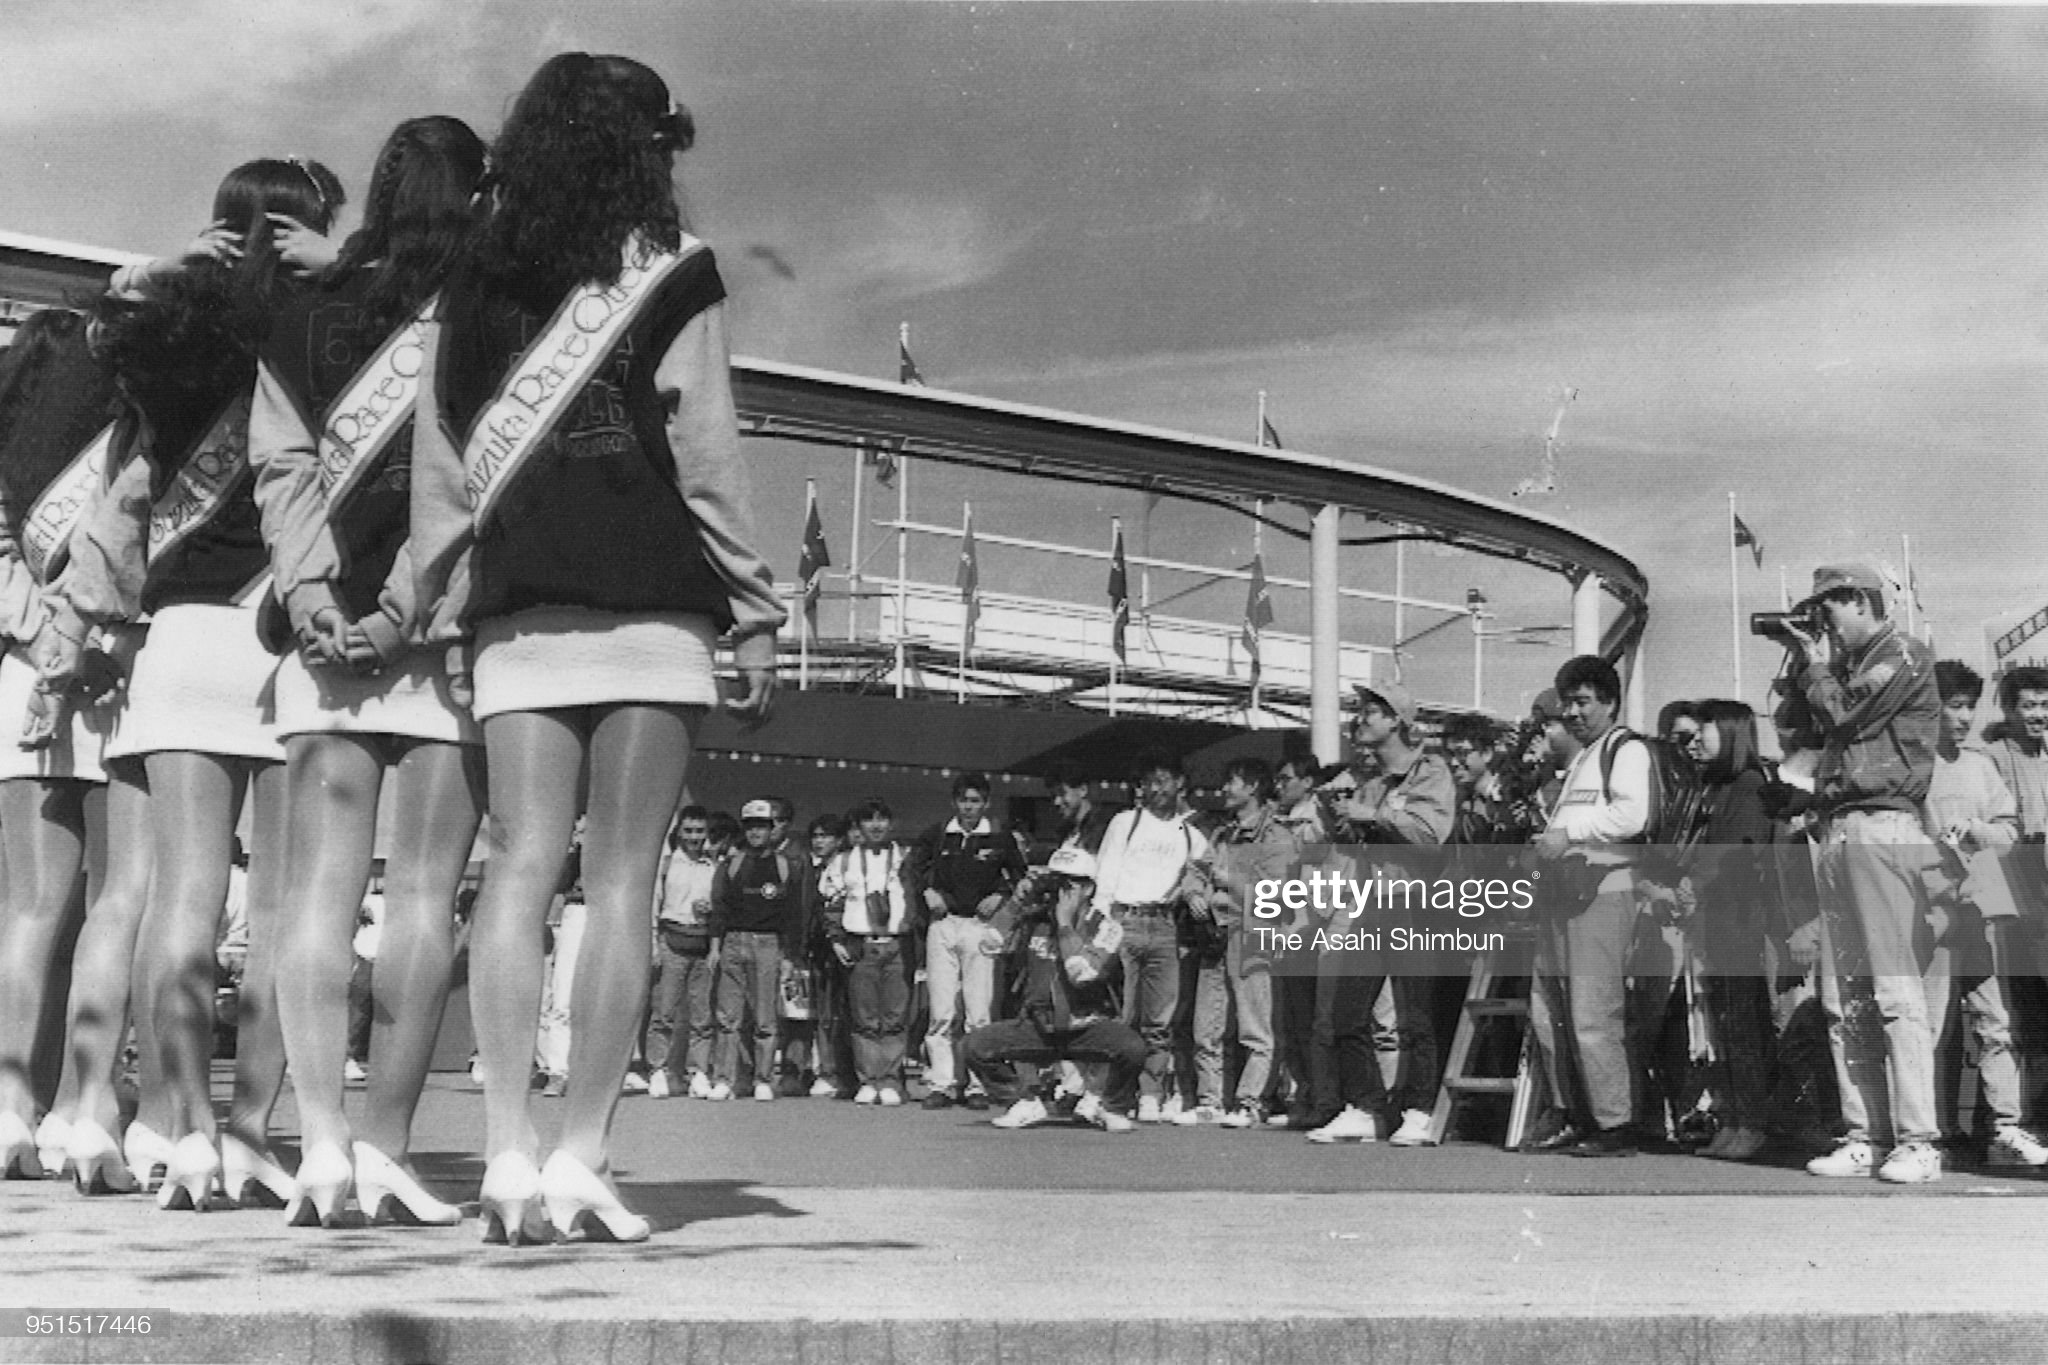 Grid girls at Suzuka in 1990.